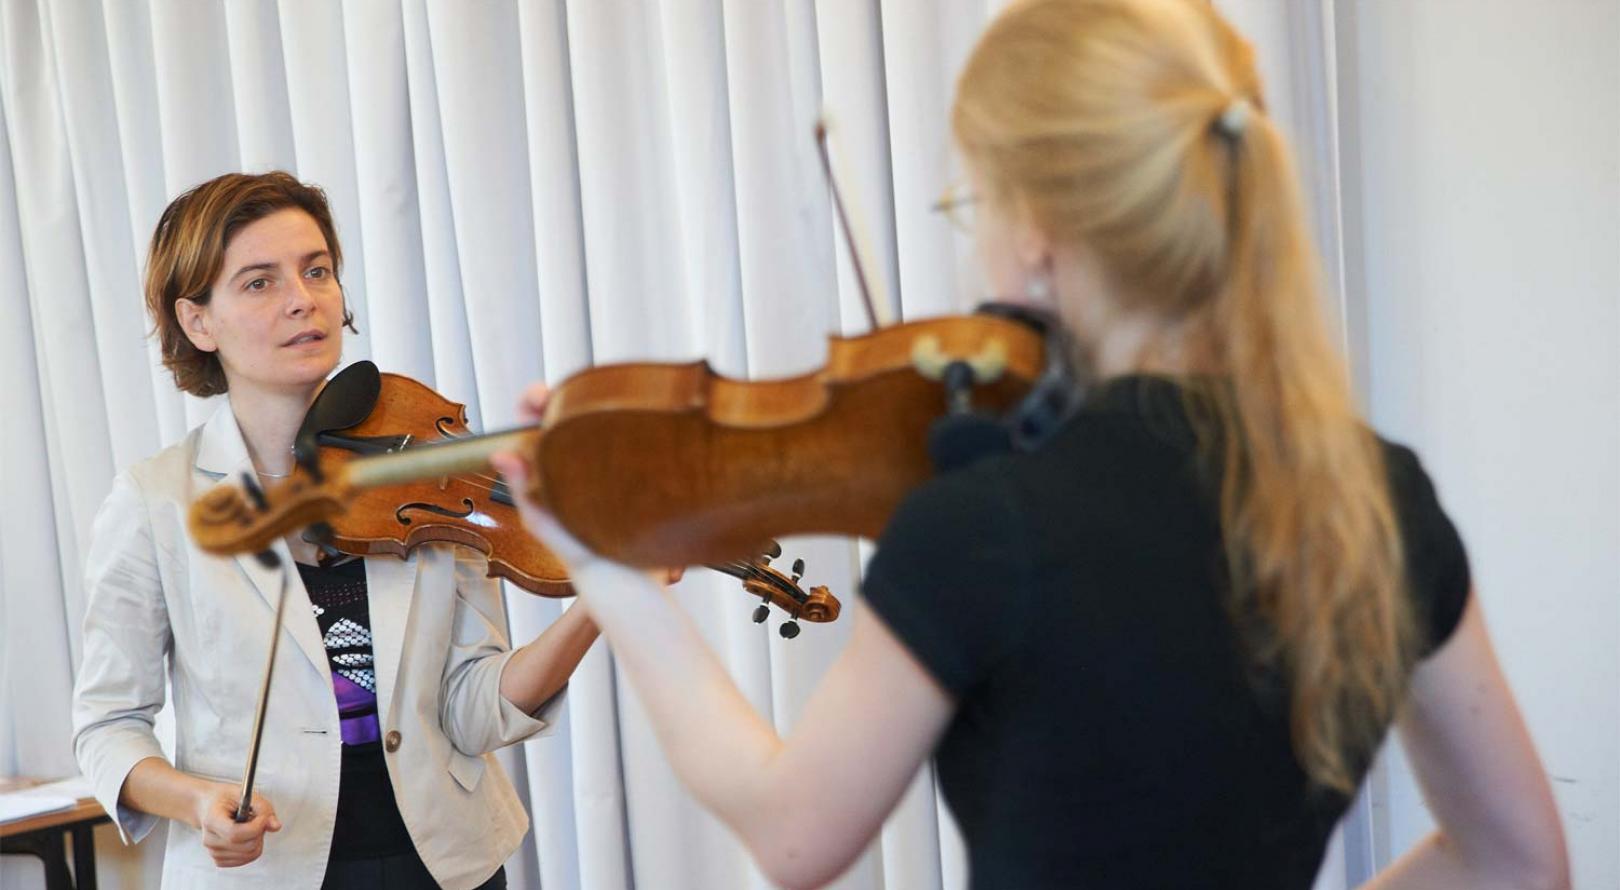 Abbildung: Teaserbild. Geigenlehrerin erklärt Studentin etwas am Instrument